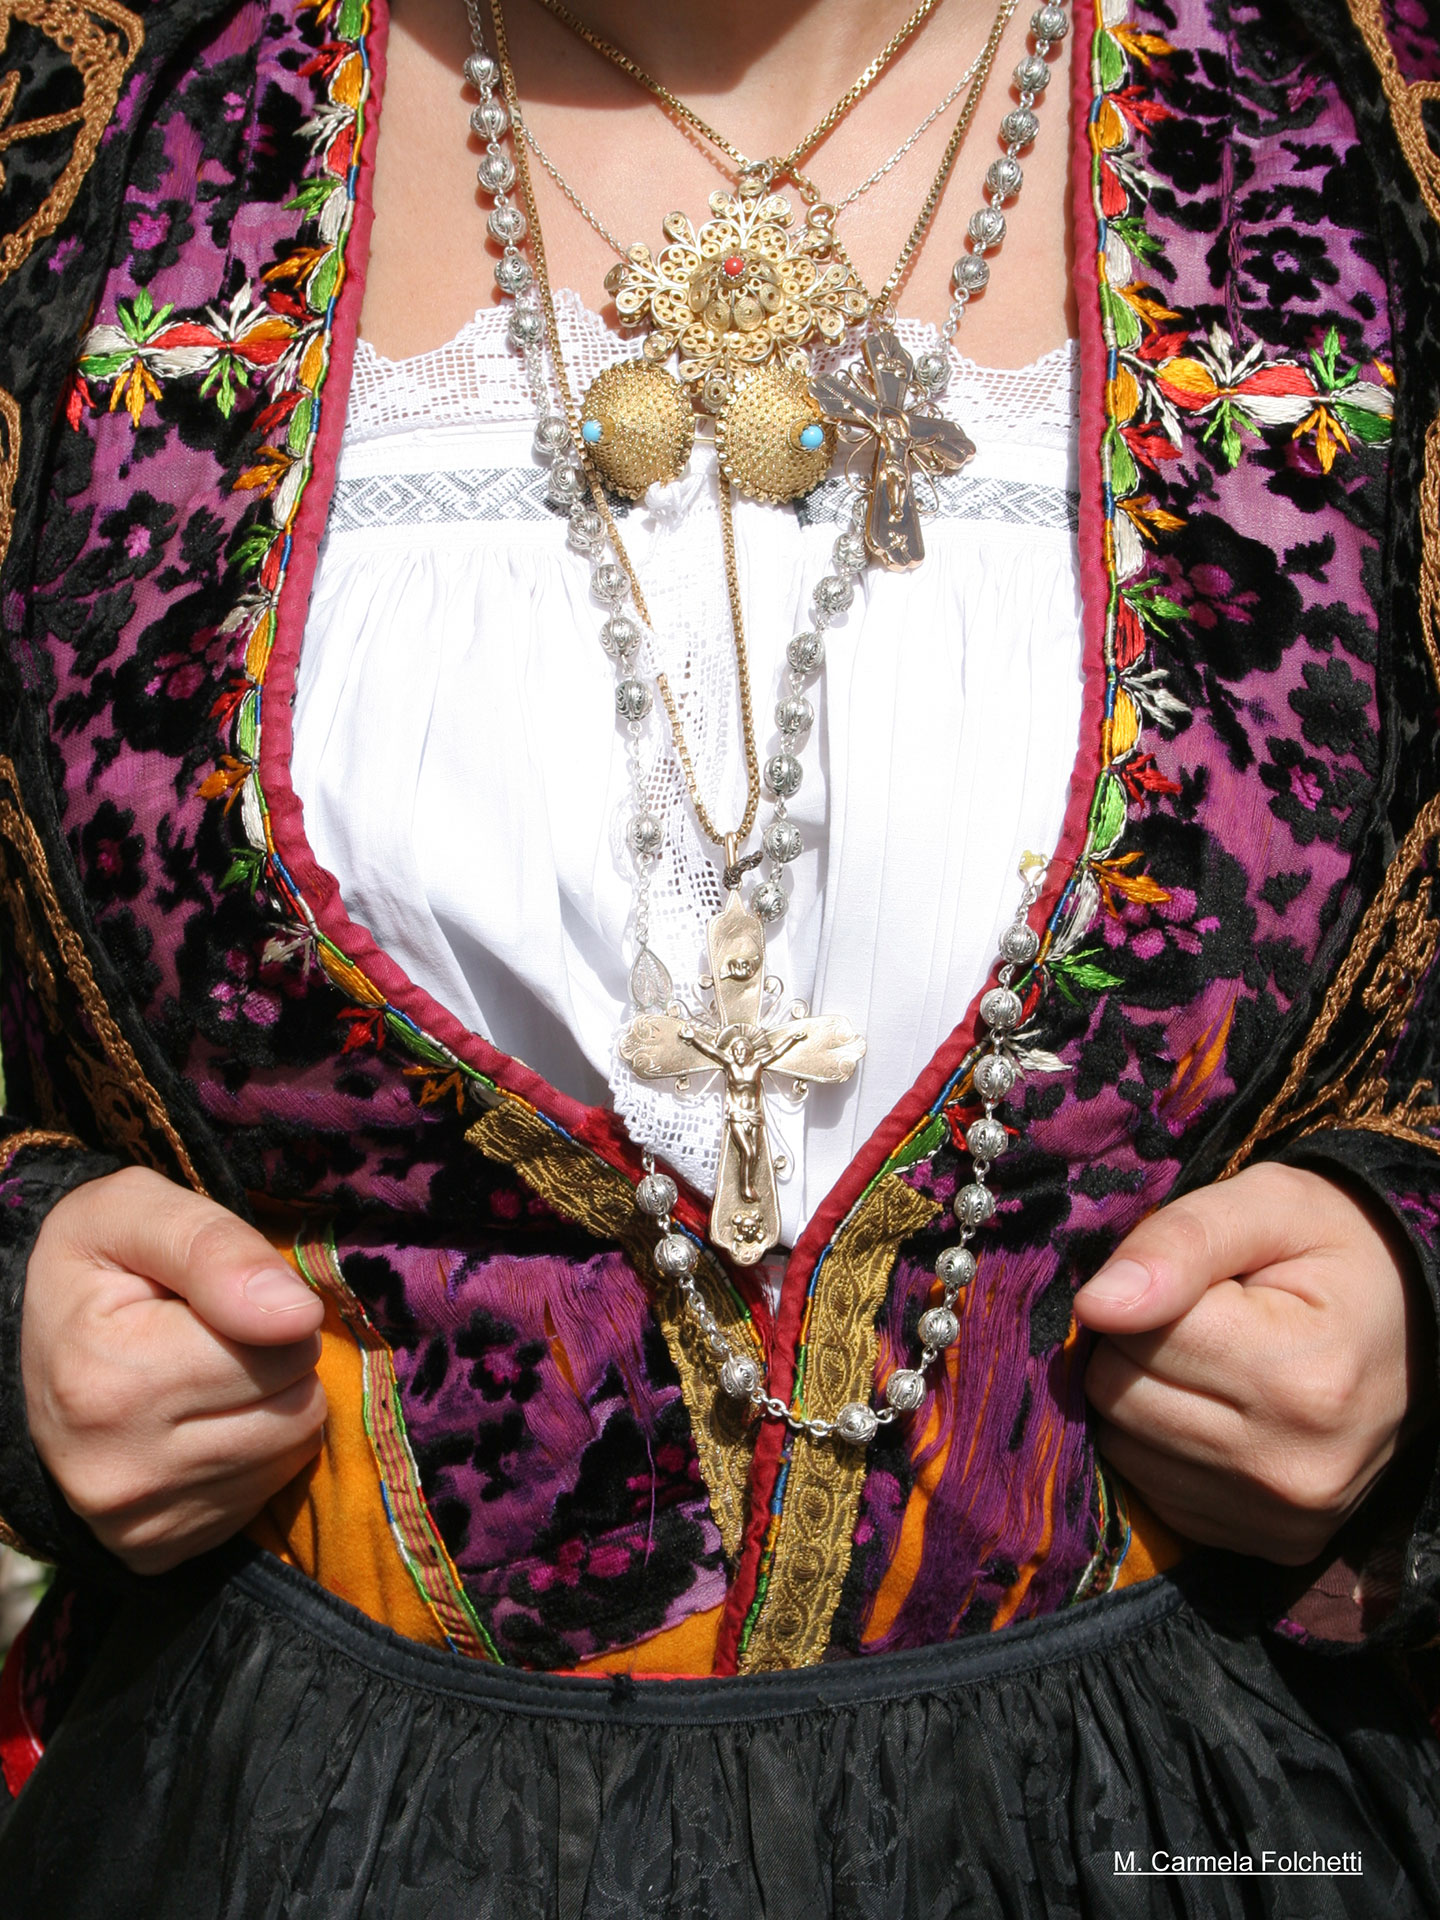 Orune, particolare del costume tradizionale - Fonte www.cuoredellasardegna.it